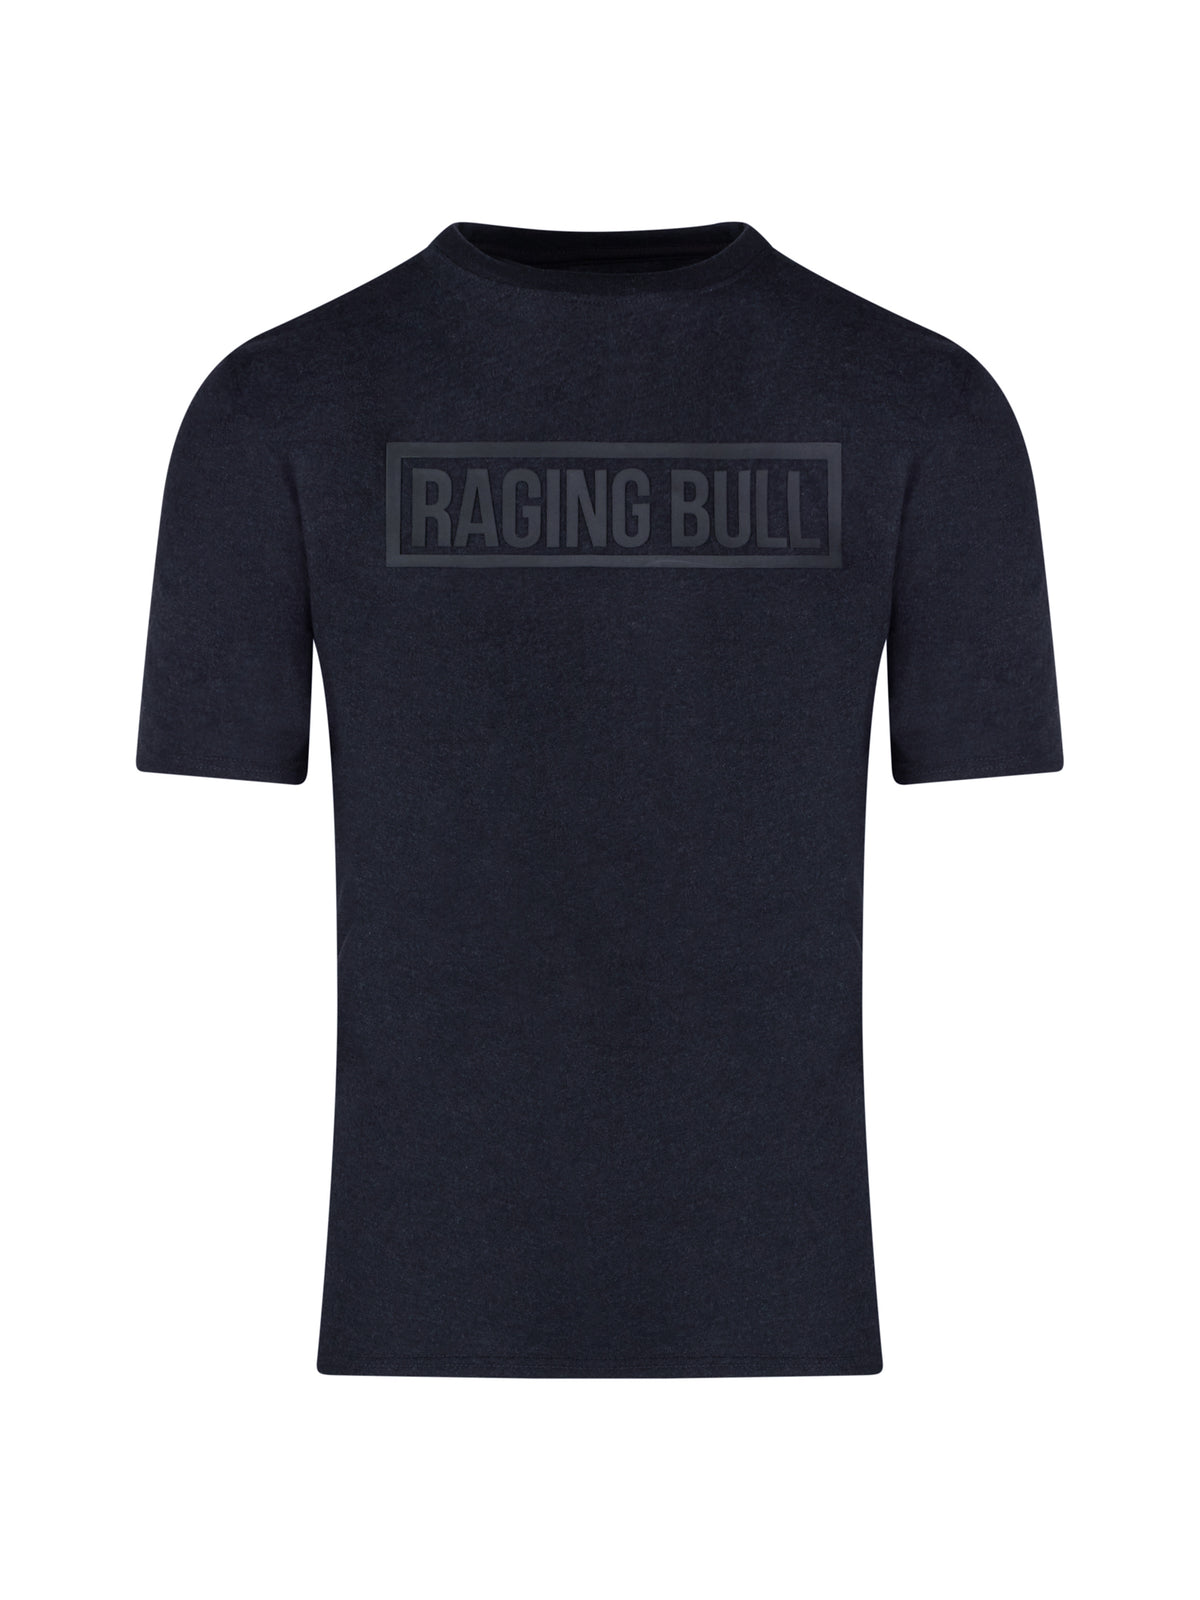 High Build T-Shirt - Black